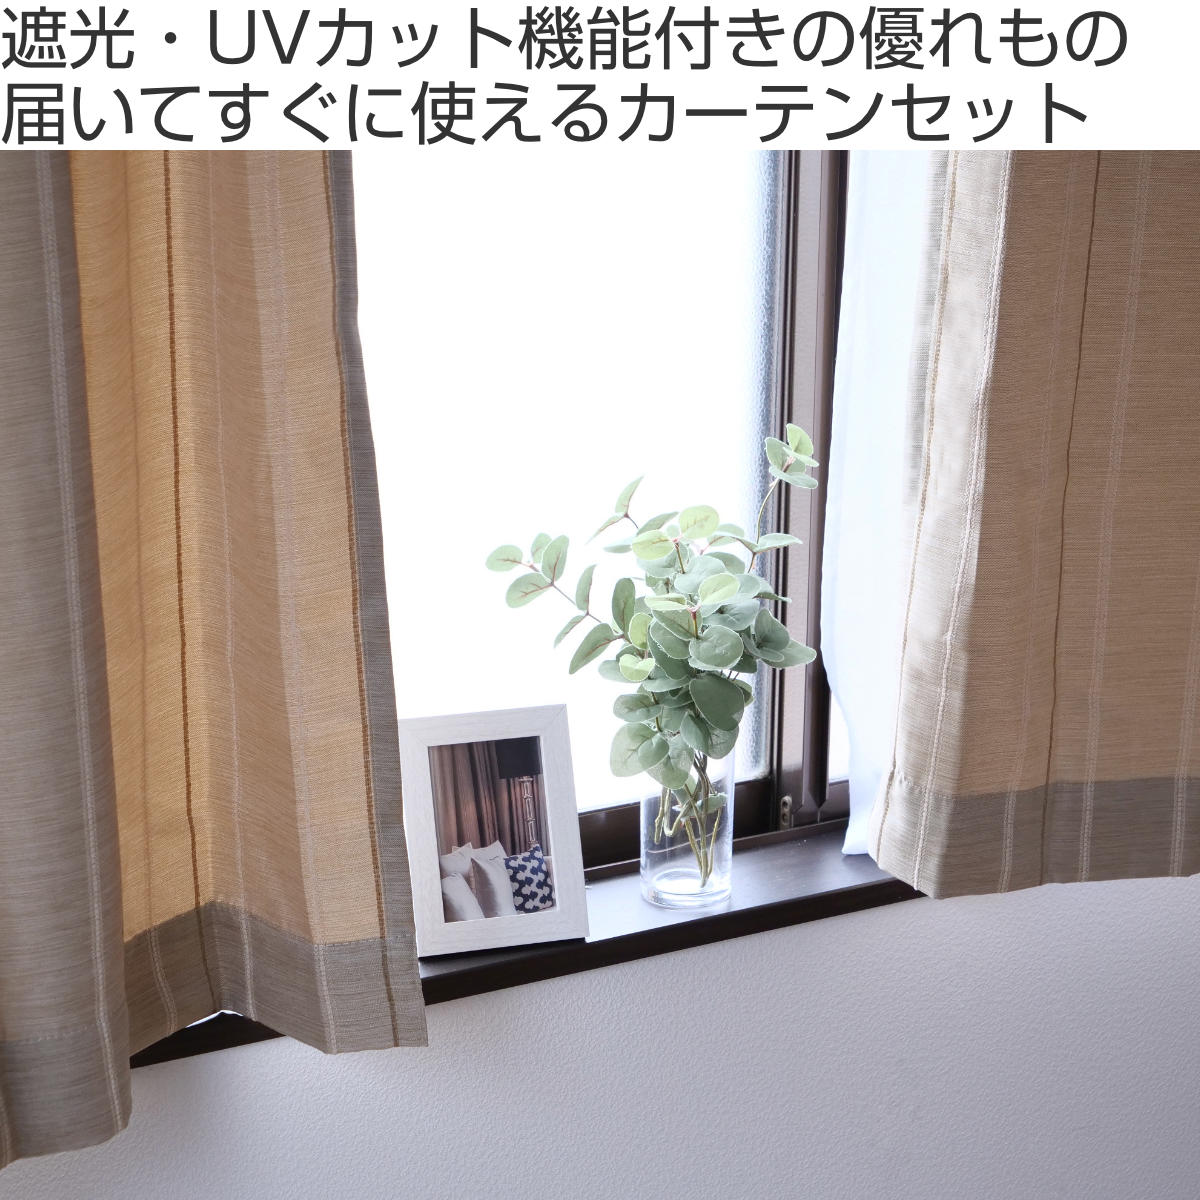 ブログドレープカーテン (幅150cm×高さ190cm)の2枚セット 色-アーバングレー /無地 シンプル 国産 日本製 1級遮光 防炎 遮熱 洗濯機で洗える 幅150cm用